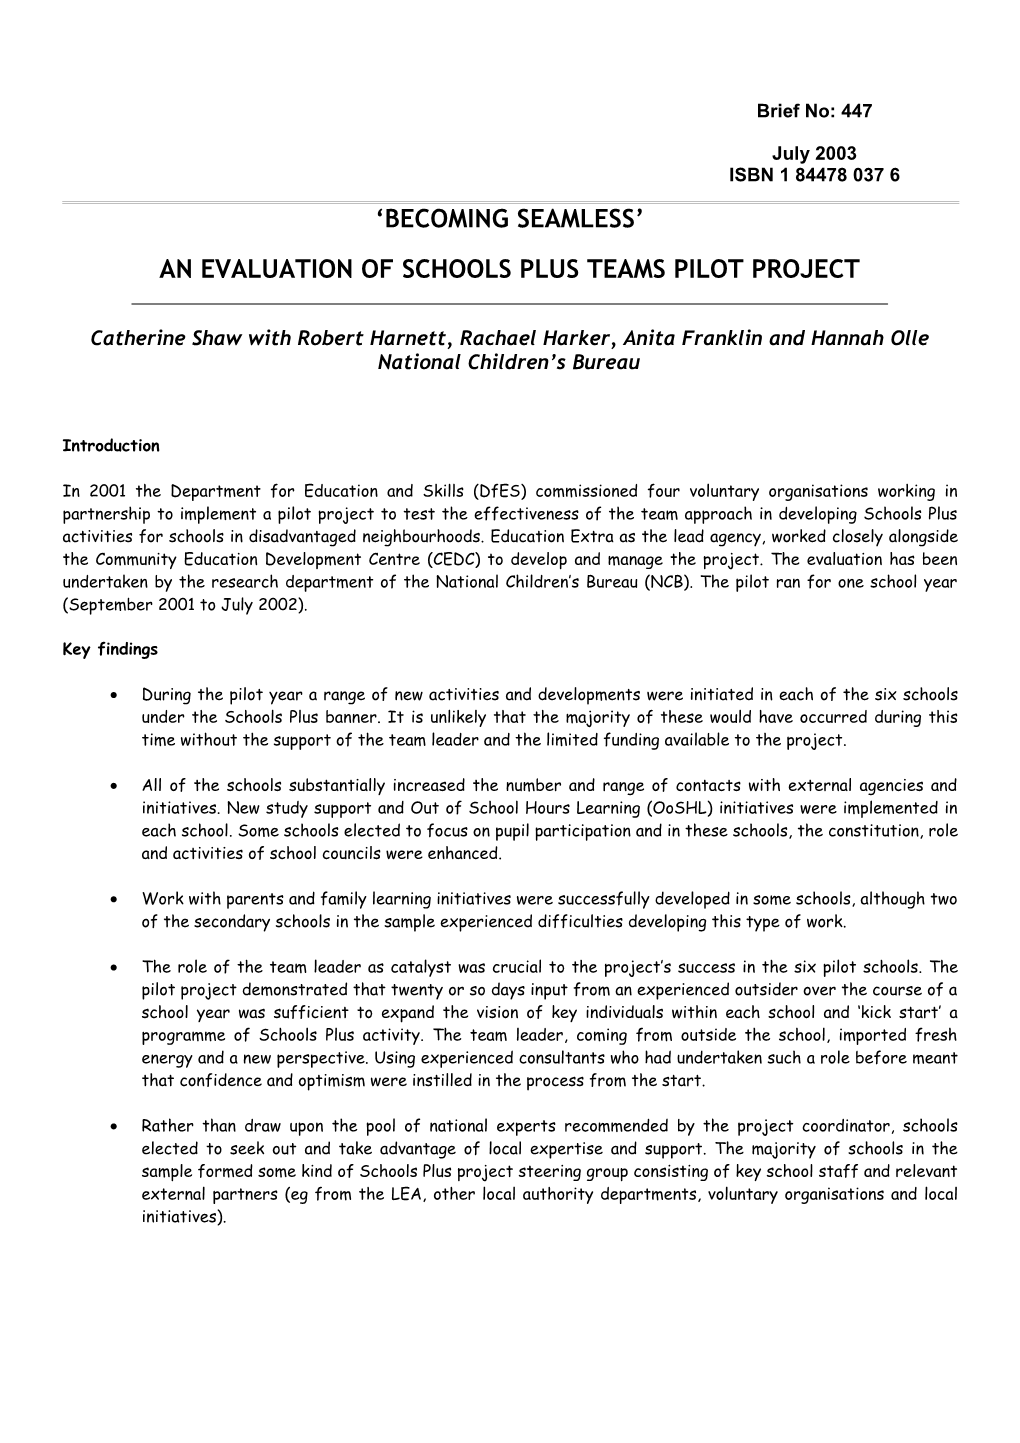 Evaluation of Schools Plus Team Pilots